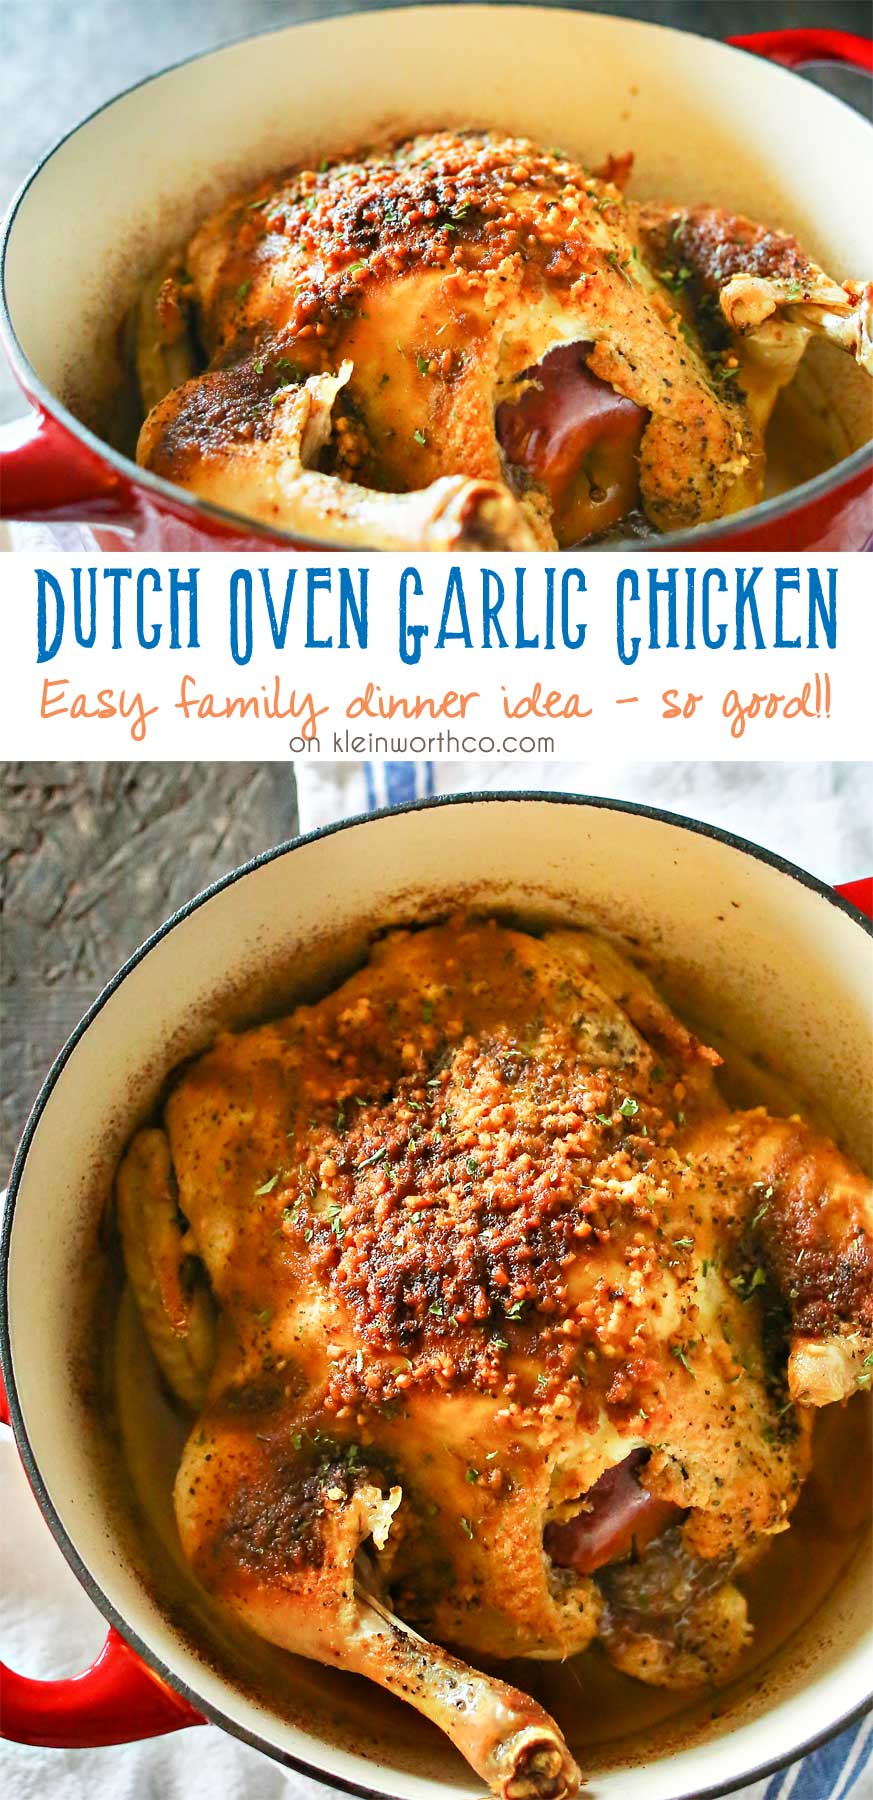 https://www.kleinworthco.com/wp-content/uploads/2016/04/Dutch-Oven-Garlic-Chicken-1800.jpg